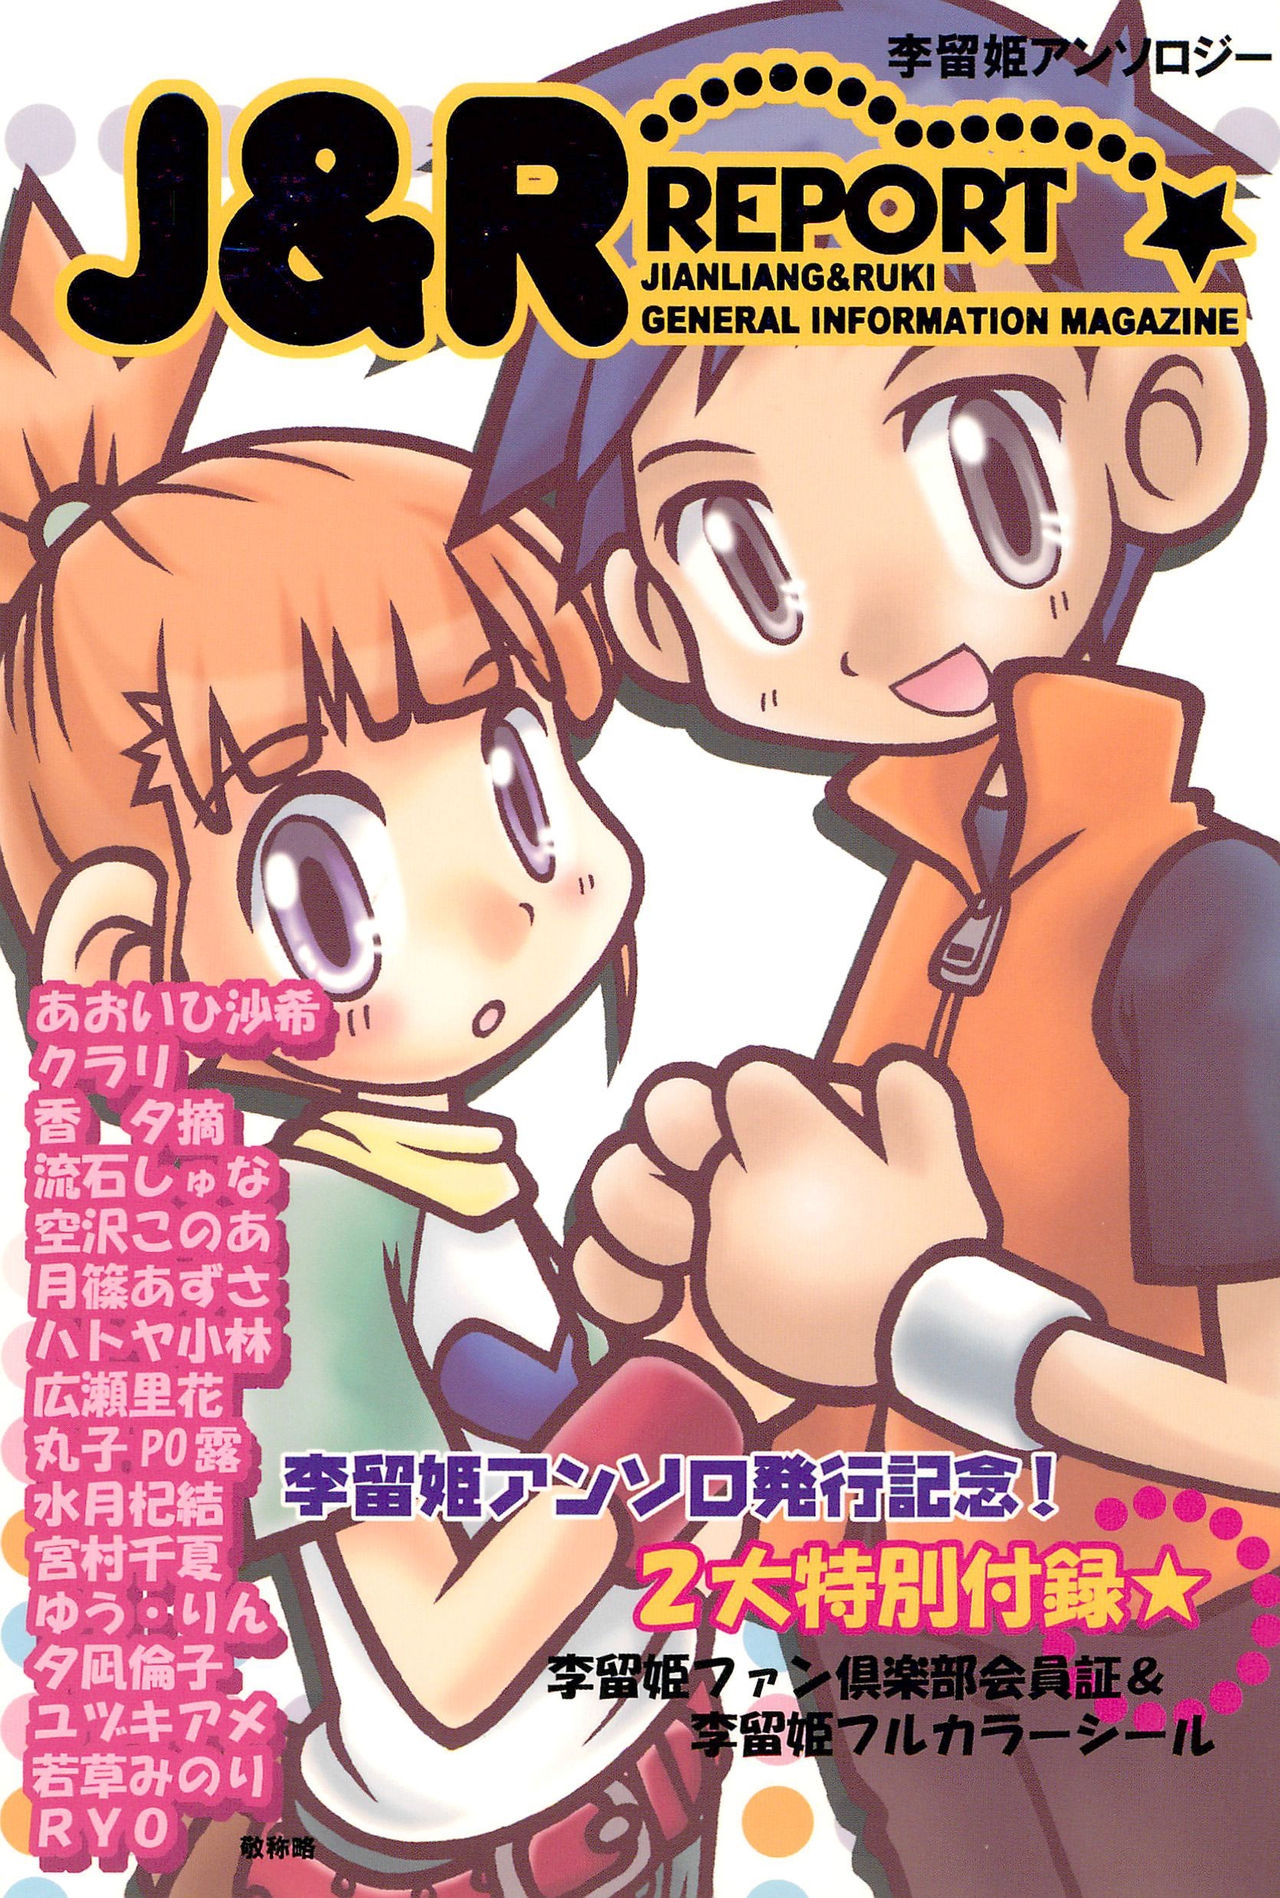 (SC15) [LeeRuki Anthology Jikkou Iinkai (Various)] LeeRuki Anthology J&R REPORT (Digimon Tamers) 0